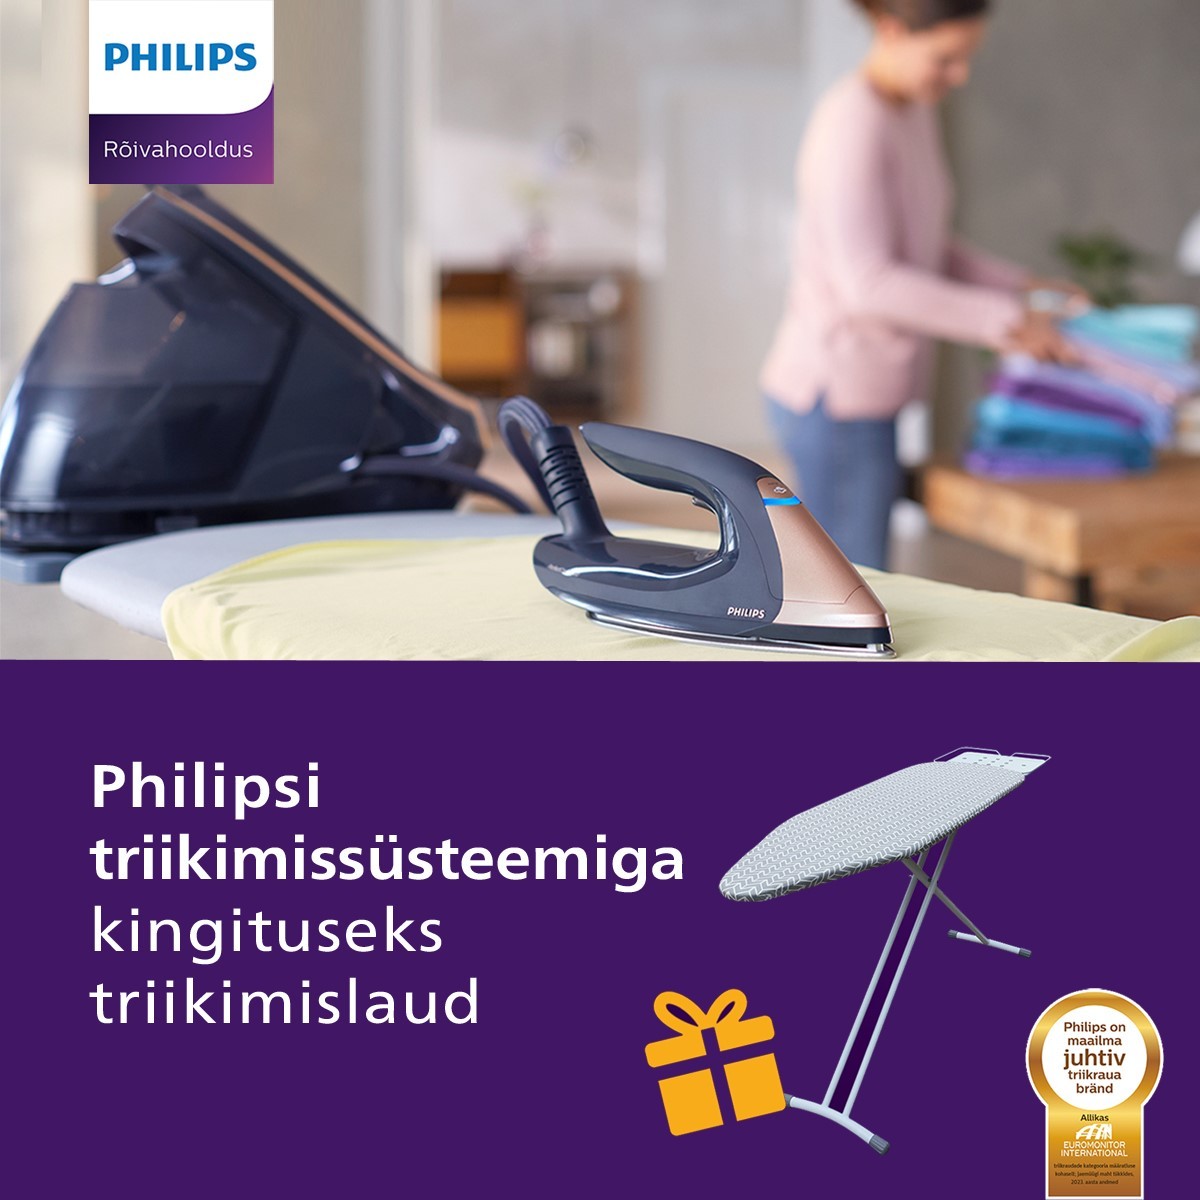 Philips 8000/9000-seeria triikimiskeskusega kingituseks spetsiaalne triikimislaud!